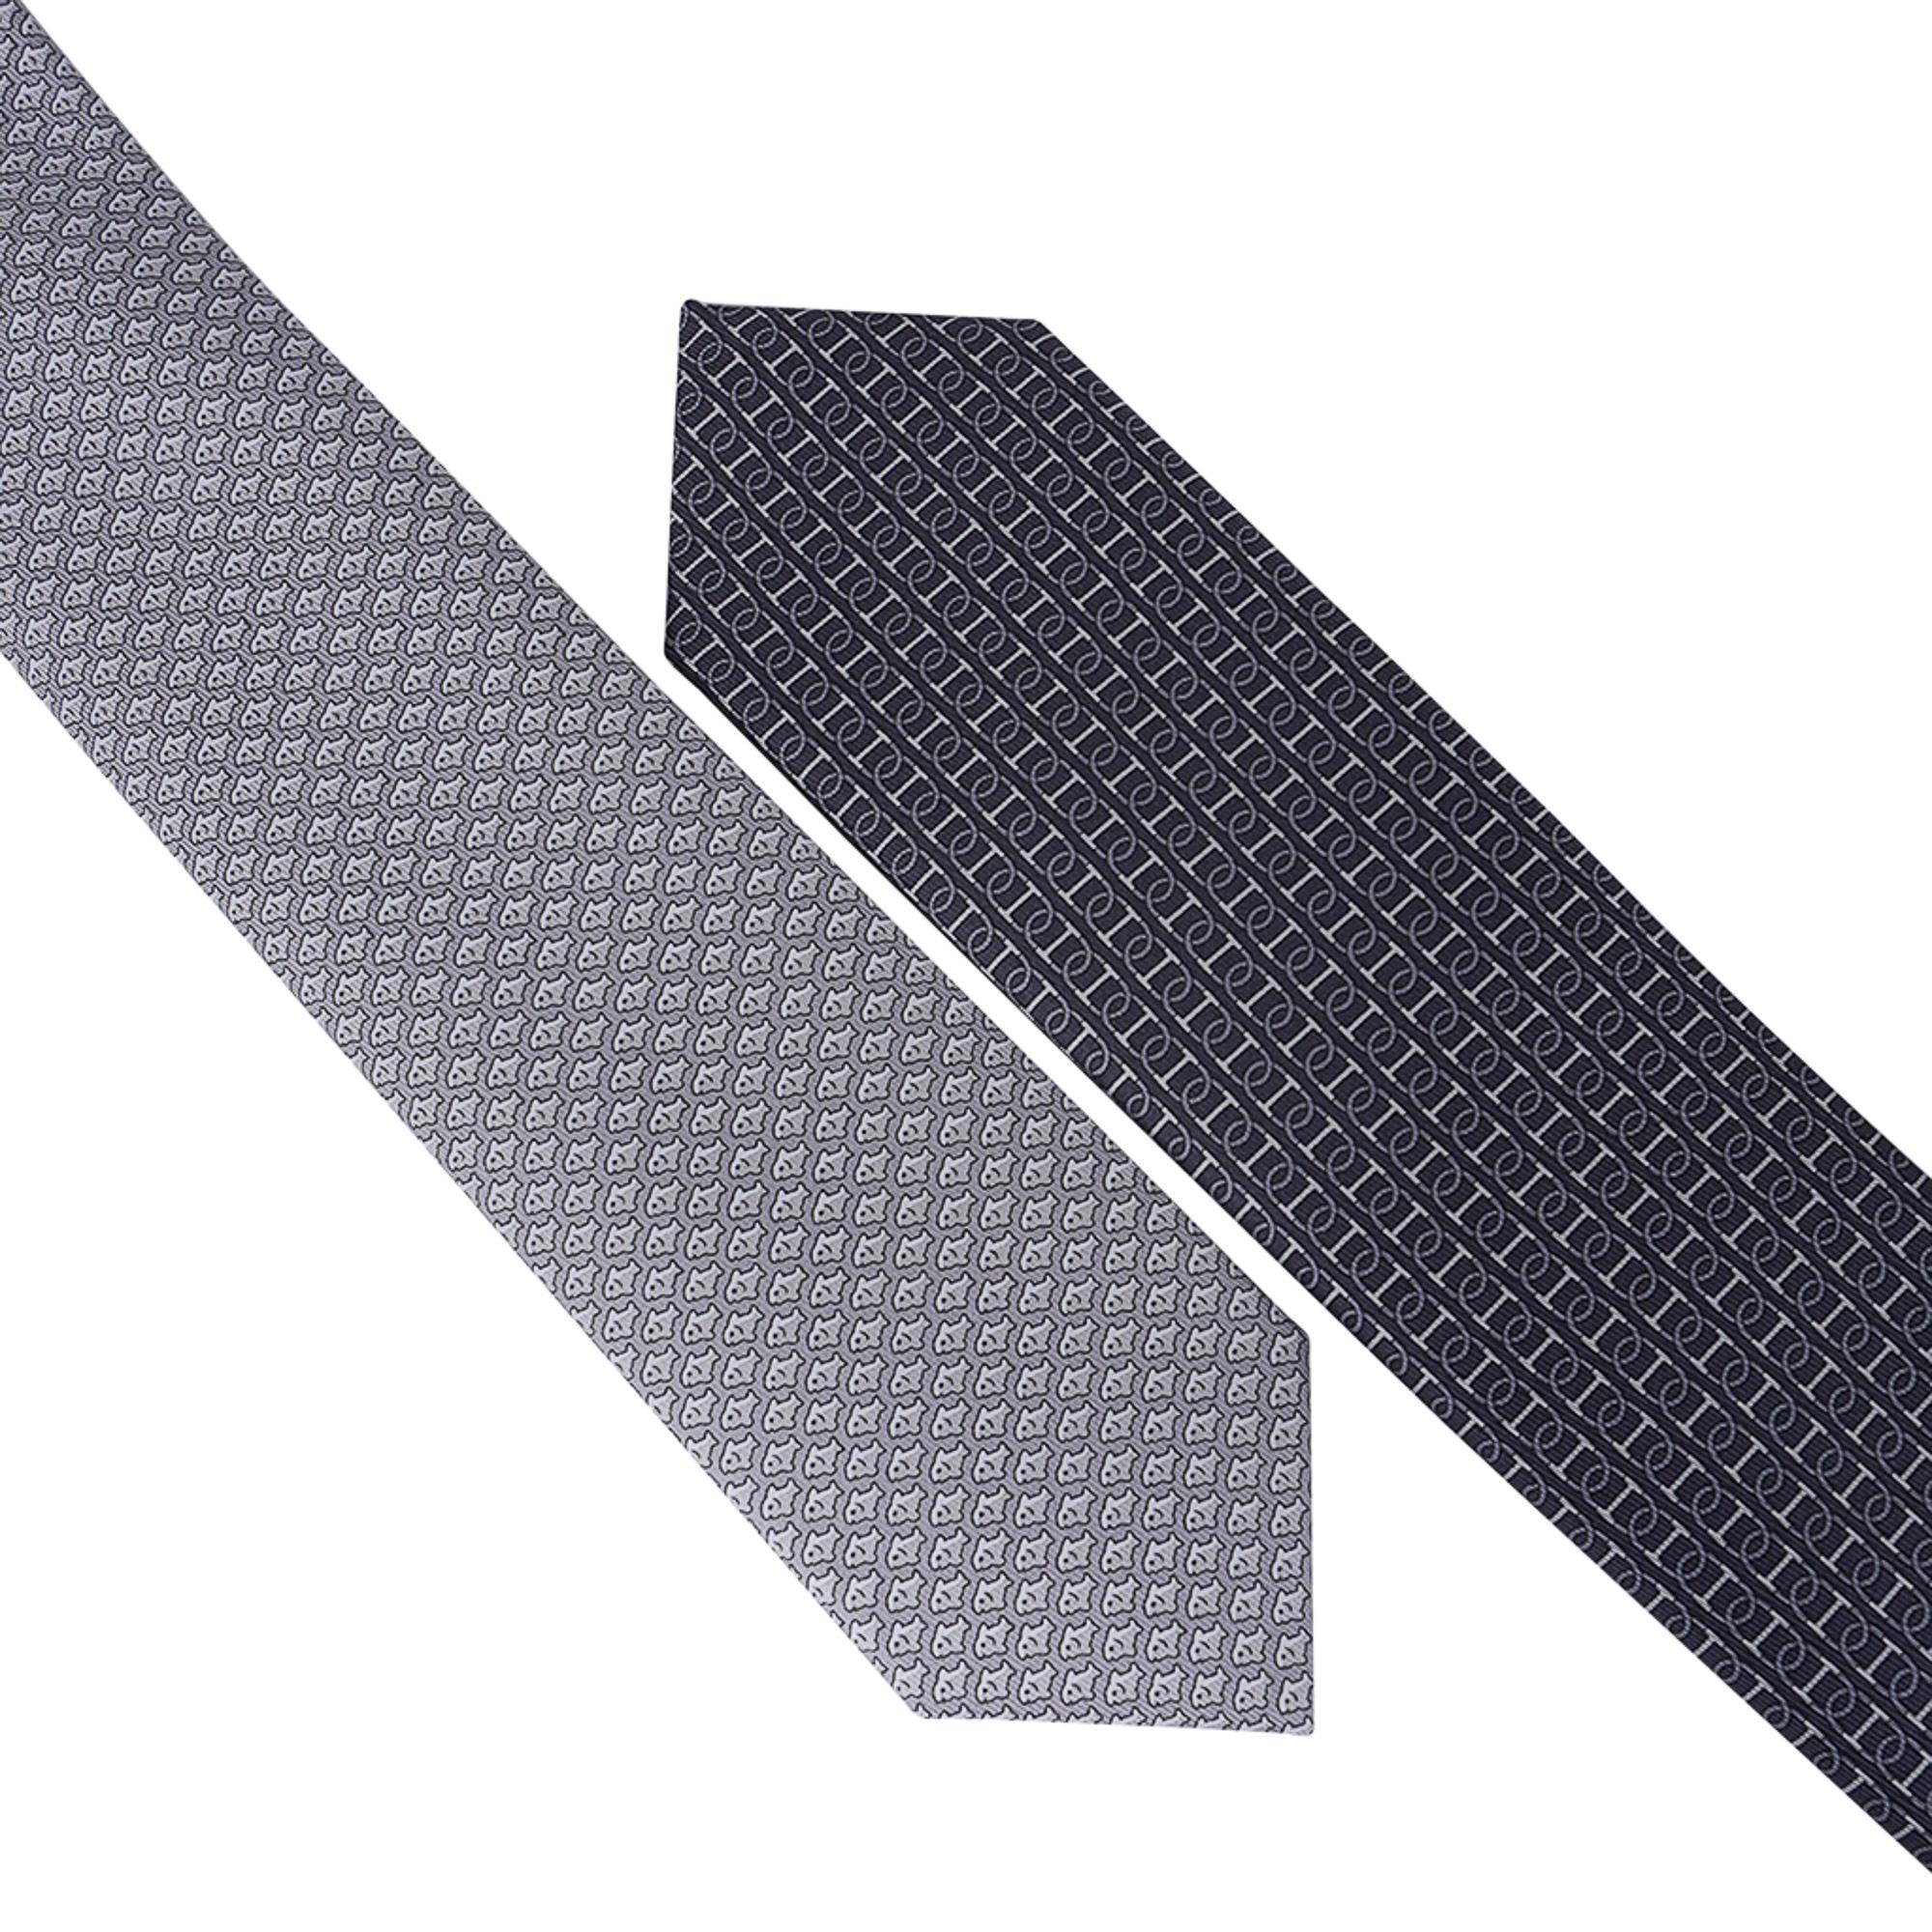 Mightychic propose une cravate en twillbi de soie Double 6 Imprimee d'Hermès.
Coloris Anthracite et Gris.
Une cravate double avec 2 motifs différents, l'un est classique et l'autre fantaisie.
Peut être porté dans les deux sens selon l'humeur du